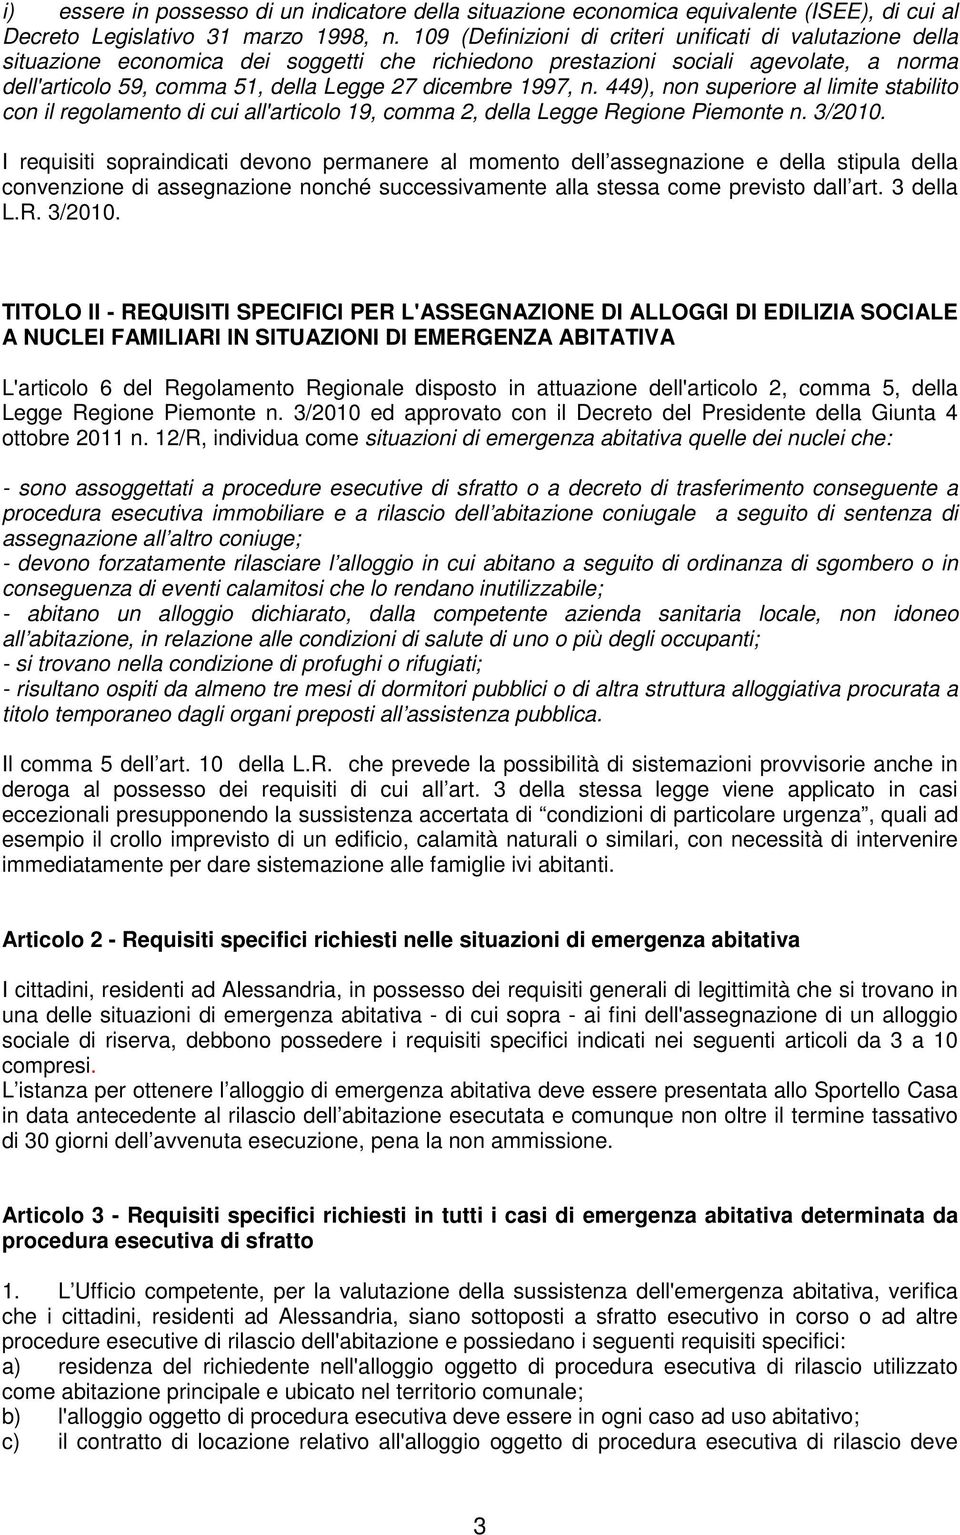 1997, n. 449), non superiore al limite stabilito con il regolamento di cui all'articolo 19, comma 2, della Legge Regione Piemonte n. 3/2010.